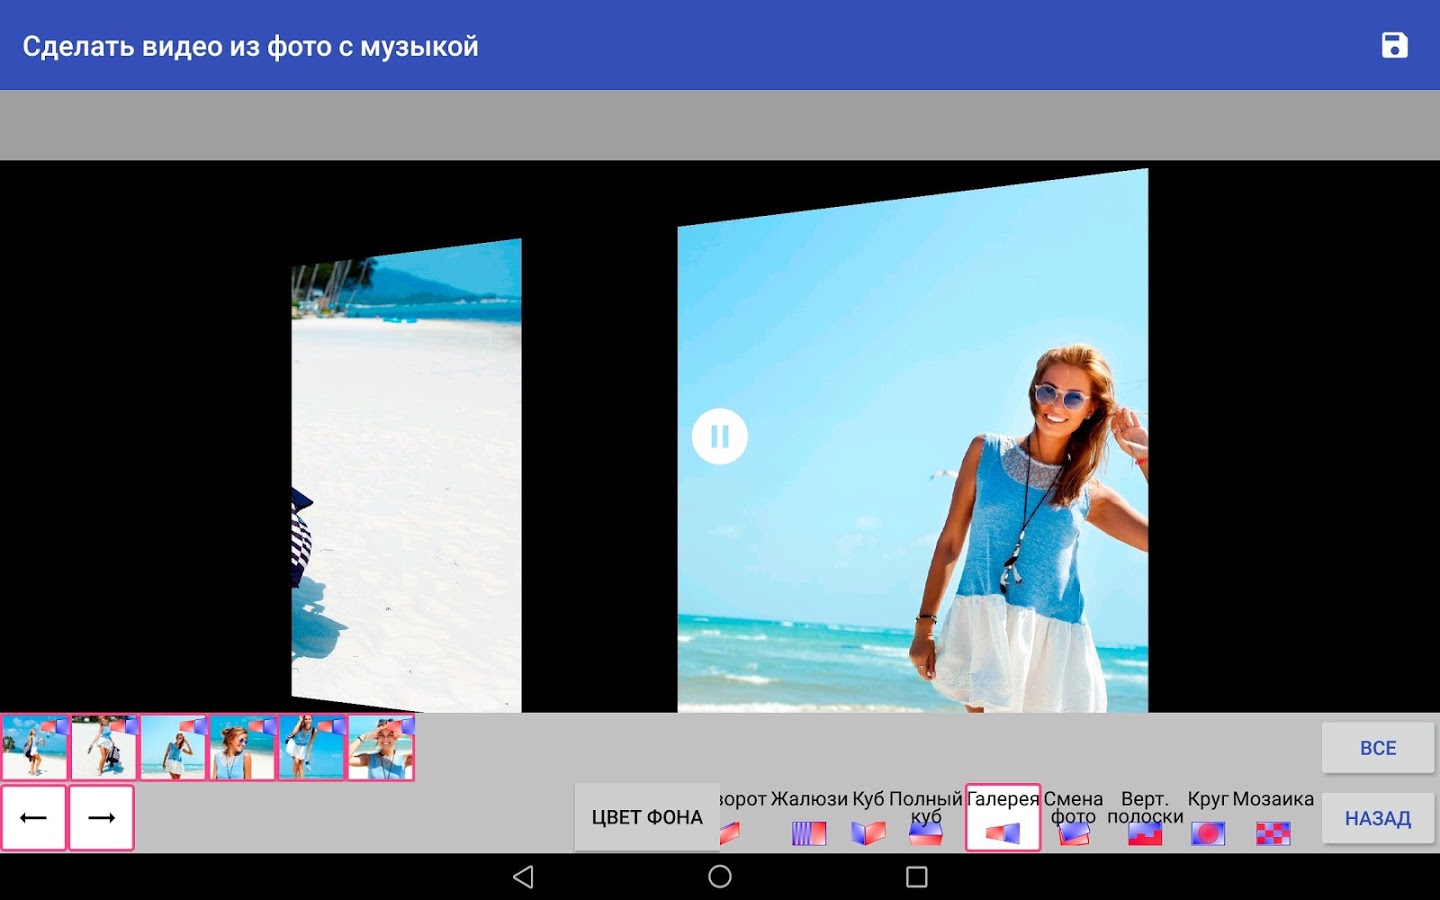 ТОП-15 программ и сервисов для создания видео из фото с музыкой